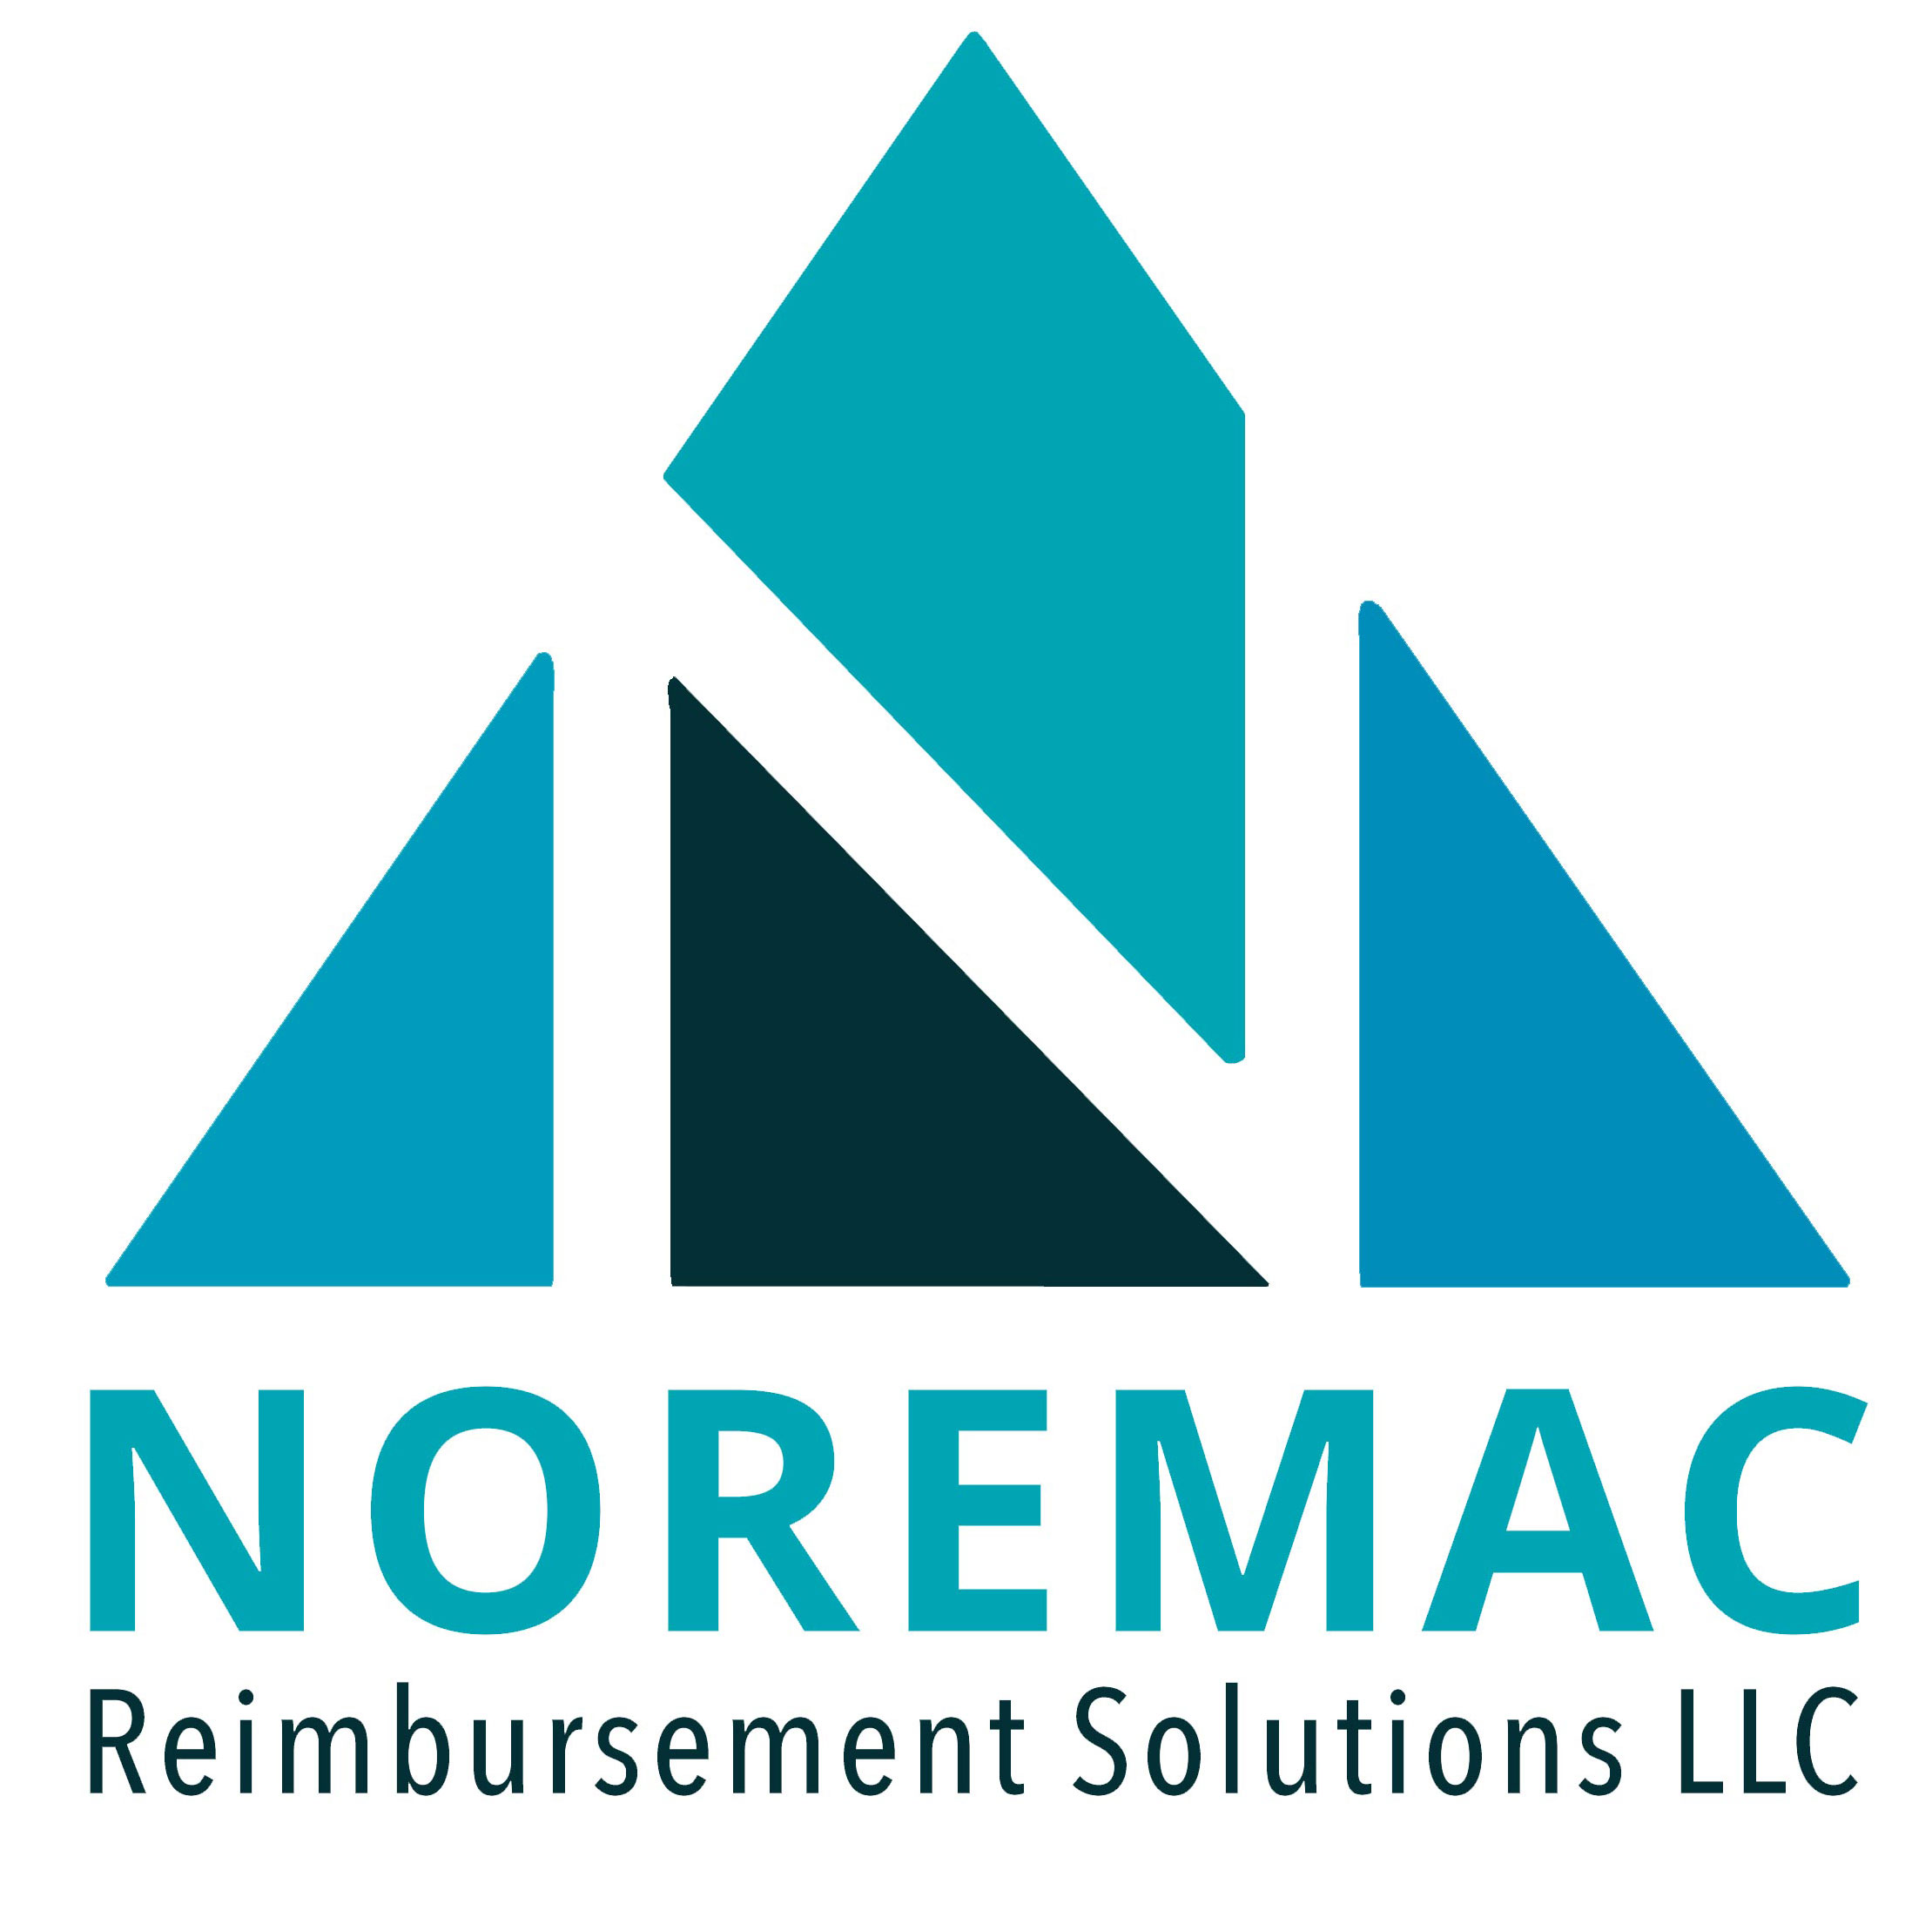 Noremac Reimbursement Solutions LLC [logo]